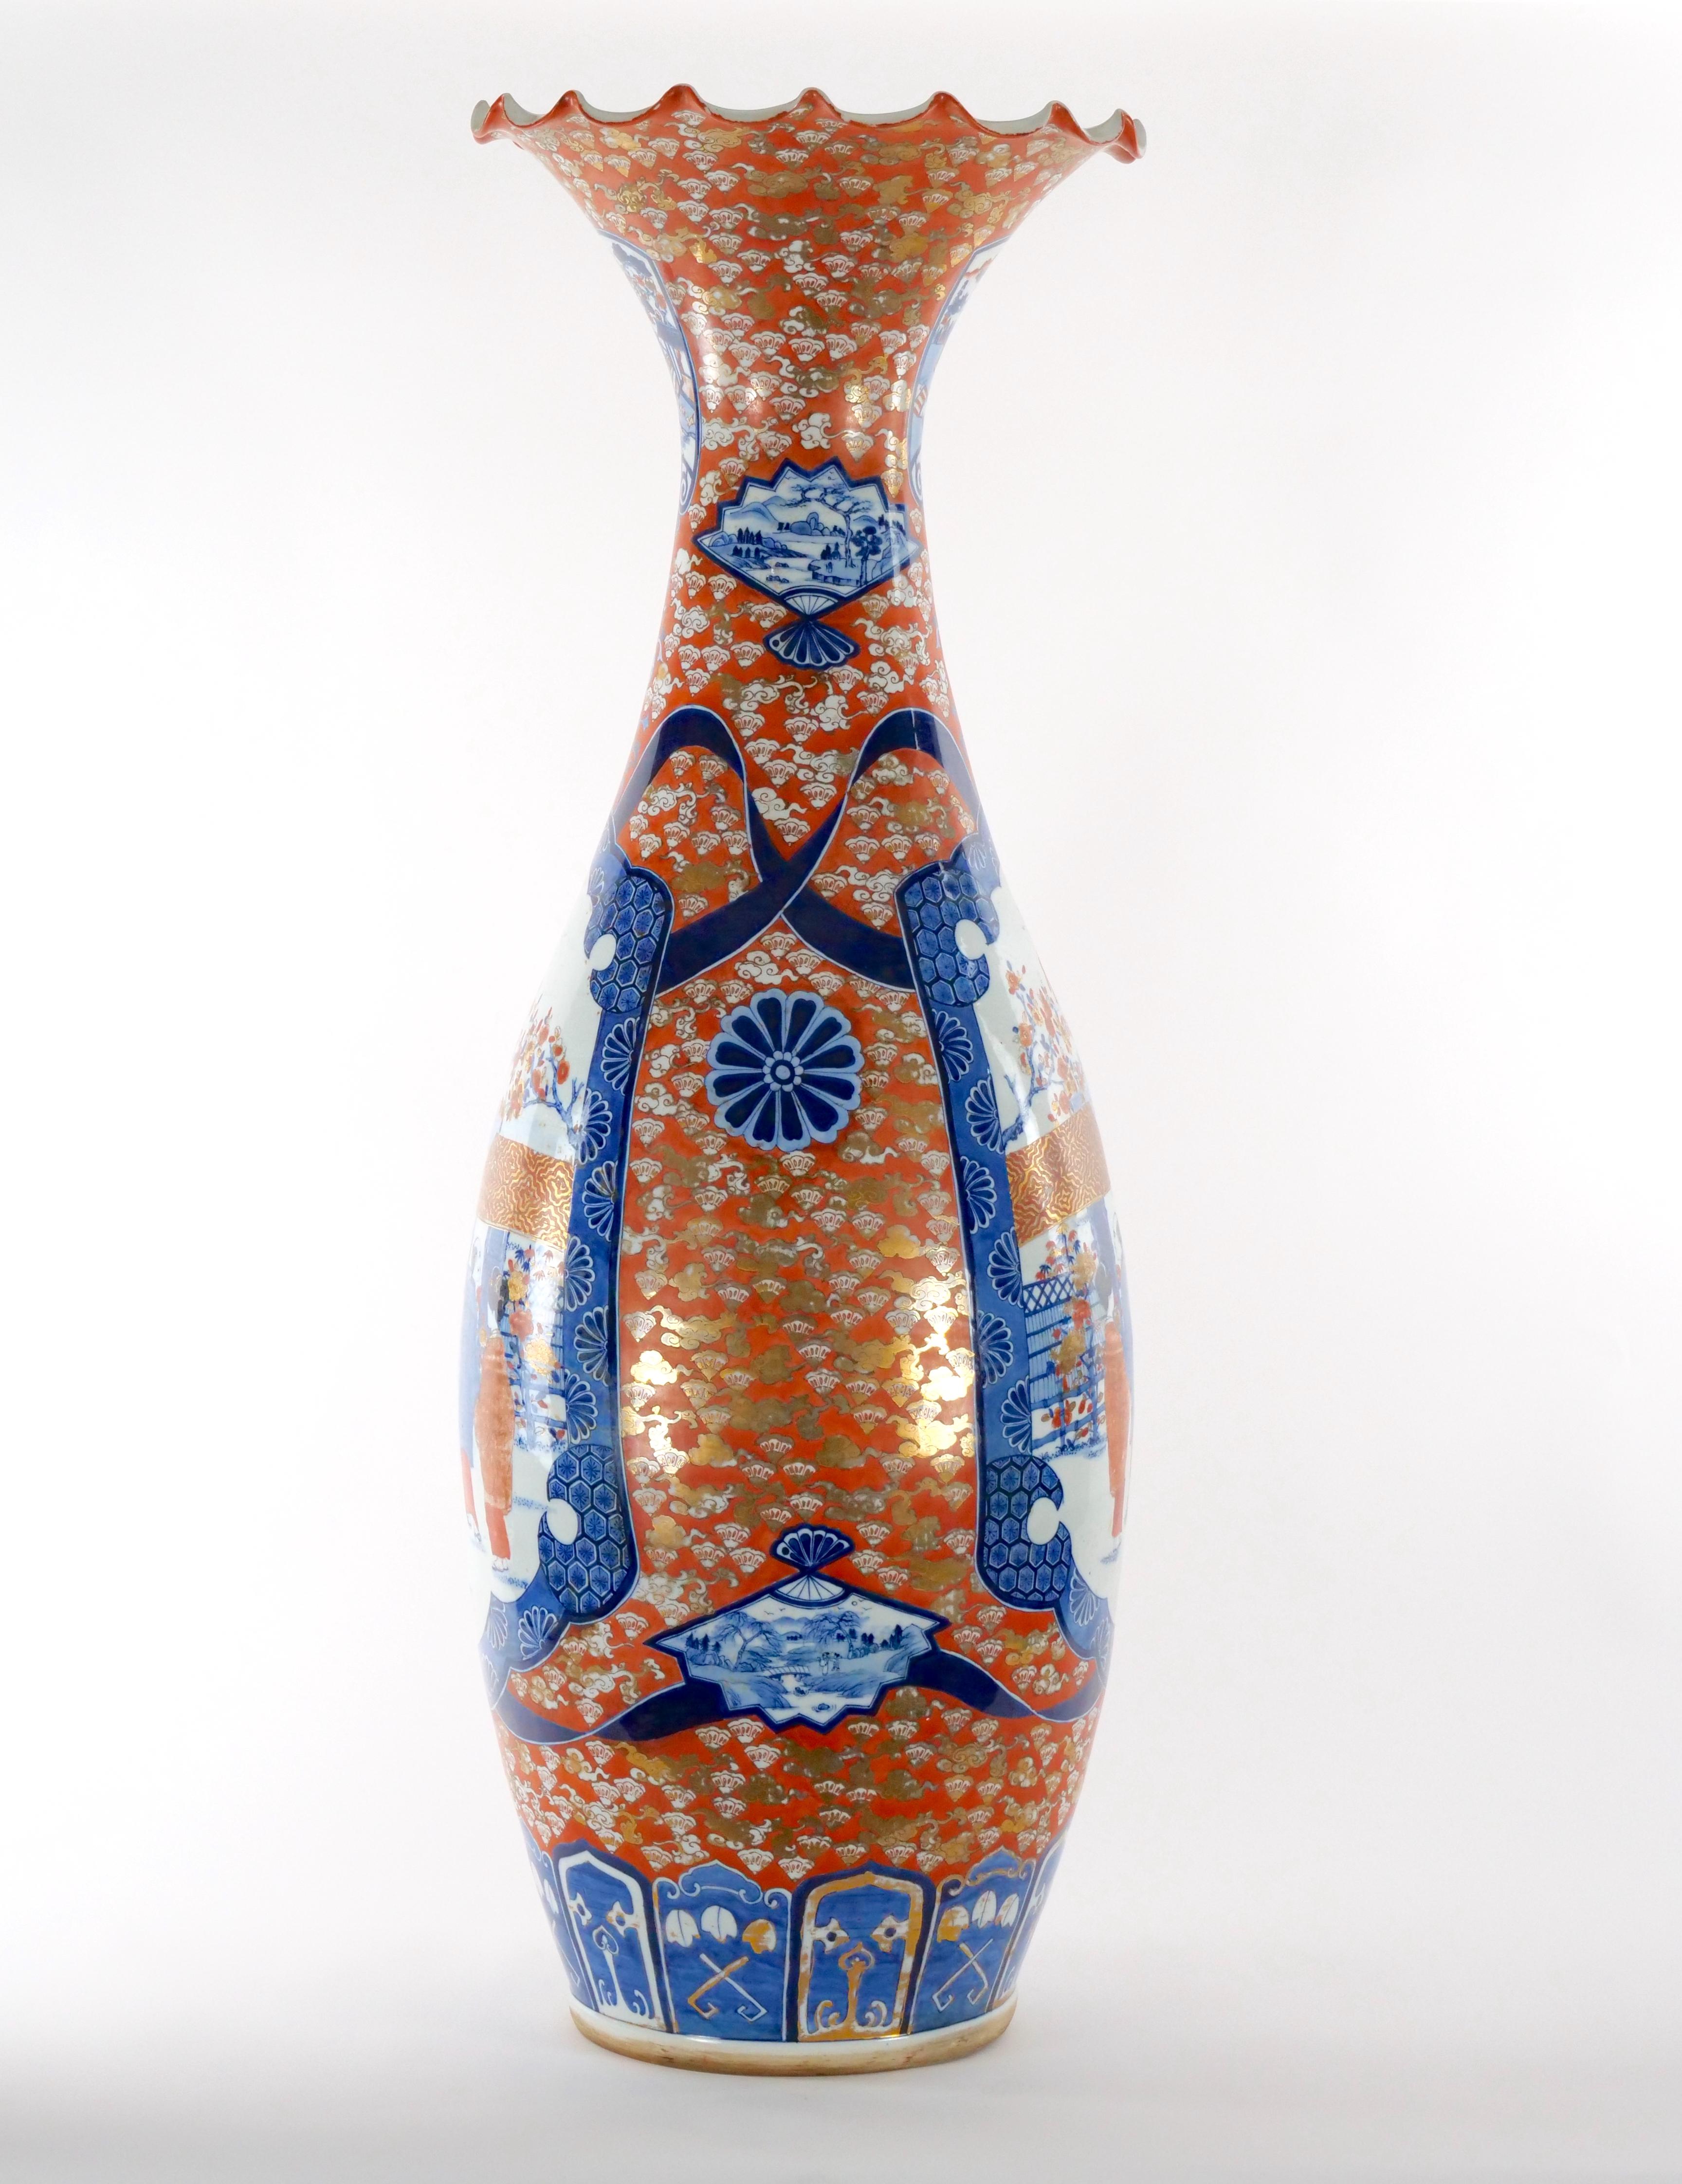 Monumentale, trompetenförmige, dekorative Bodenvase aus dekoriertem Imari-Porzellan. Die Bodenvase mit Baluster  zum Hals hin zu einem gekräuselten Rand ausläuft. Jede Seite des  Der Körper ist in Blau und Rot mit weißen Akzenten gehalten und zeigt